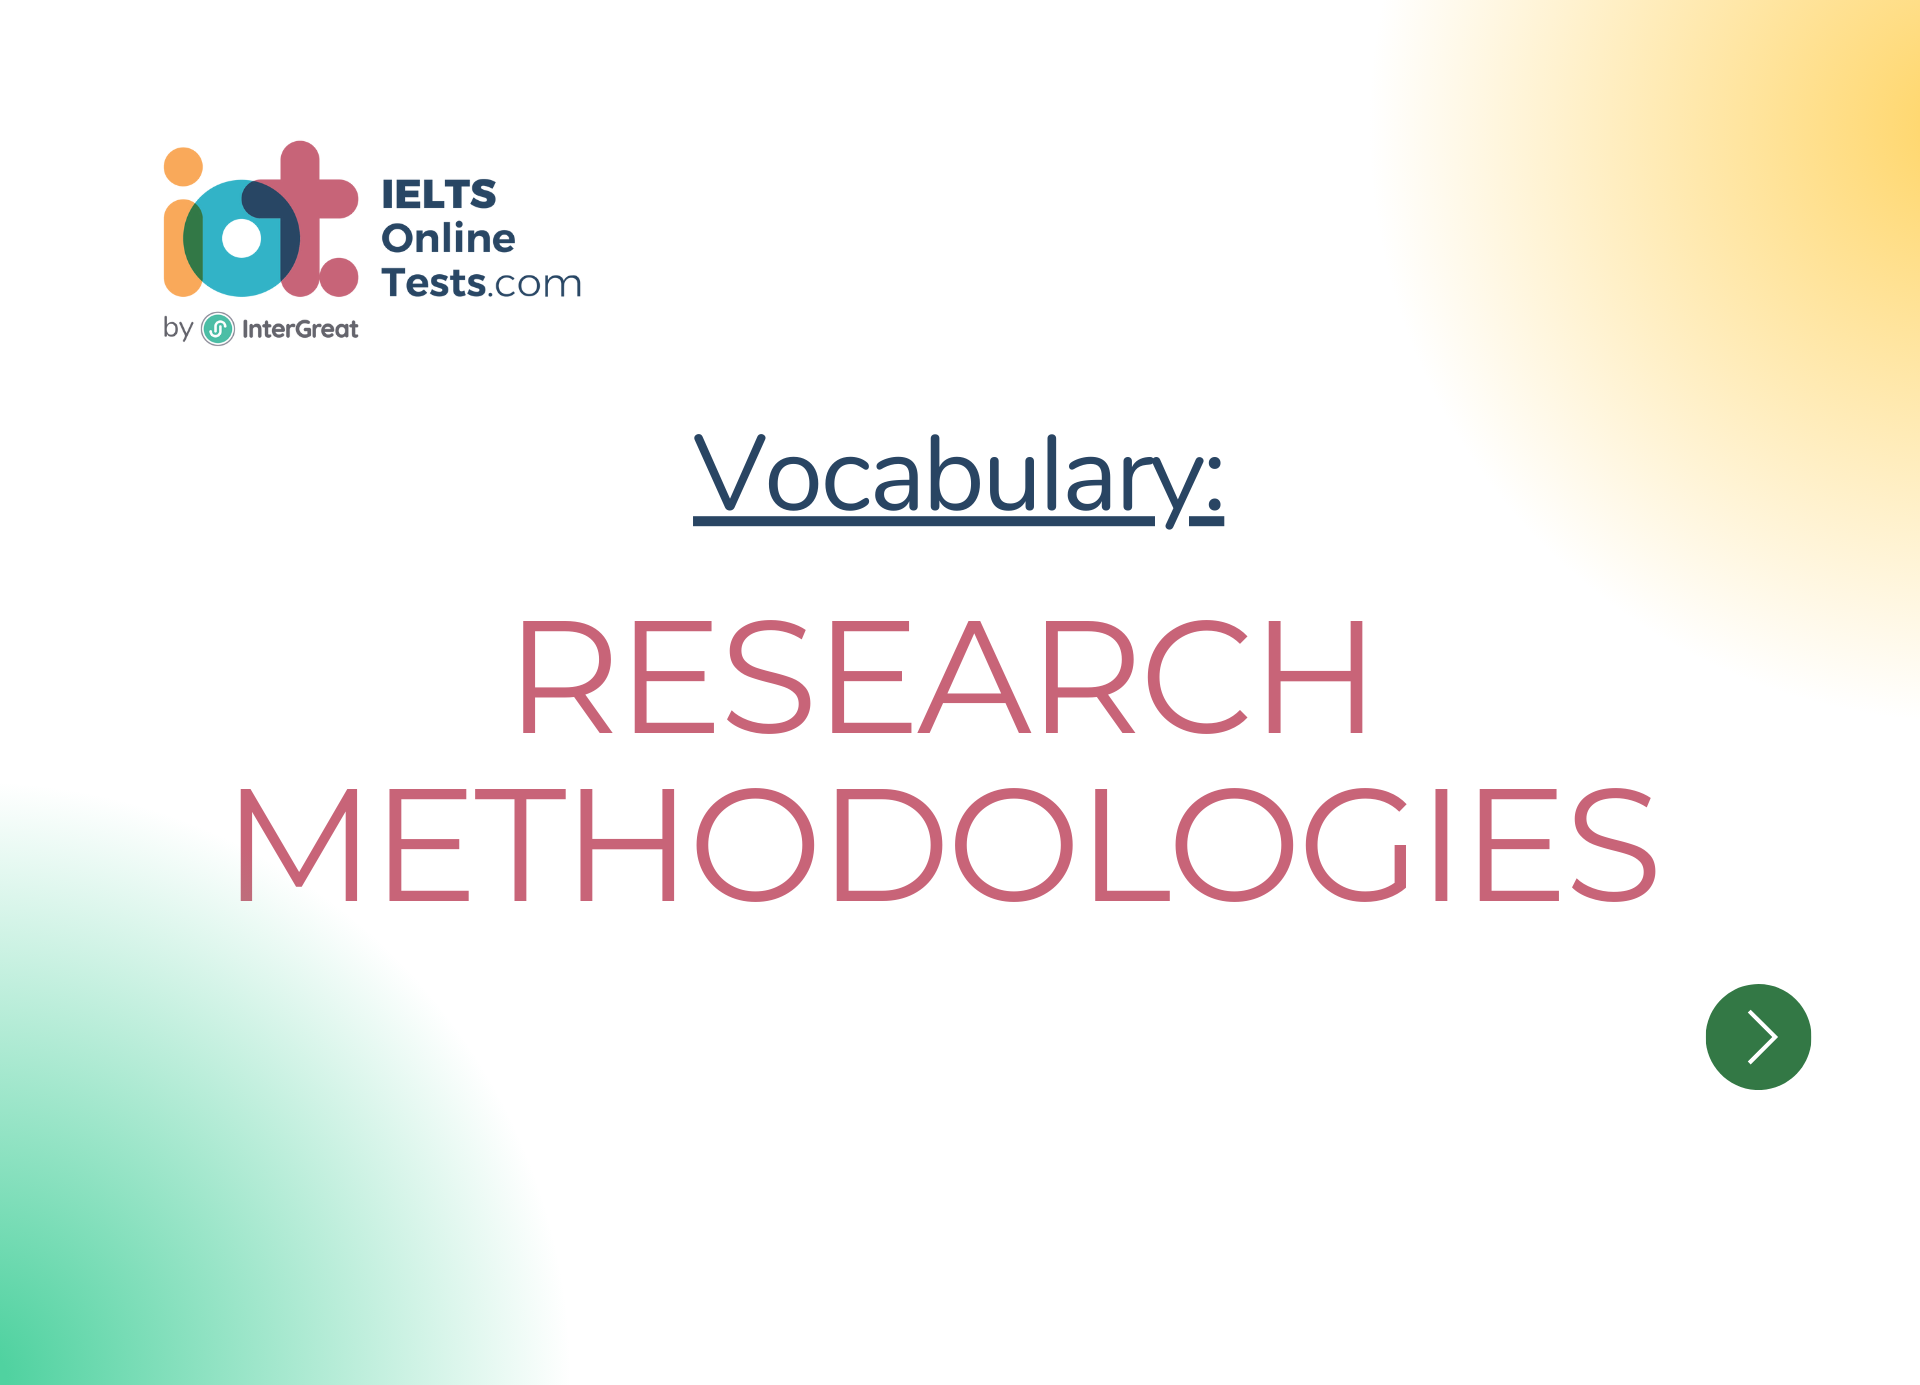 Research methodologies